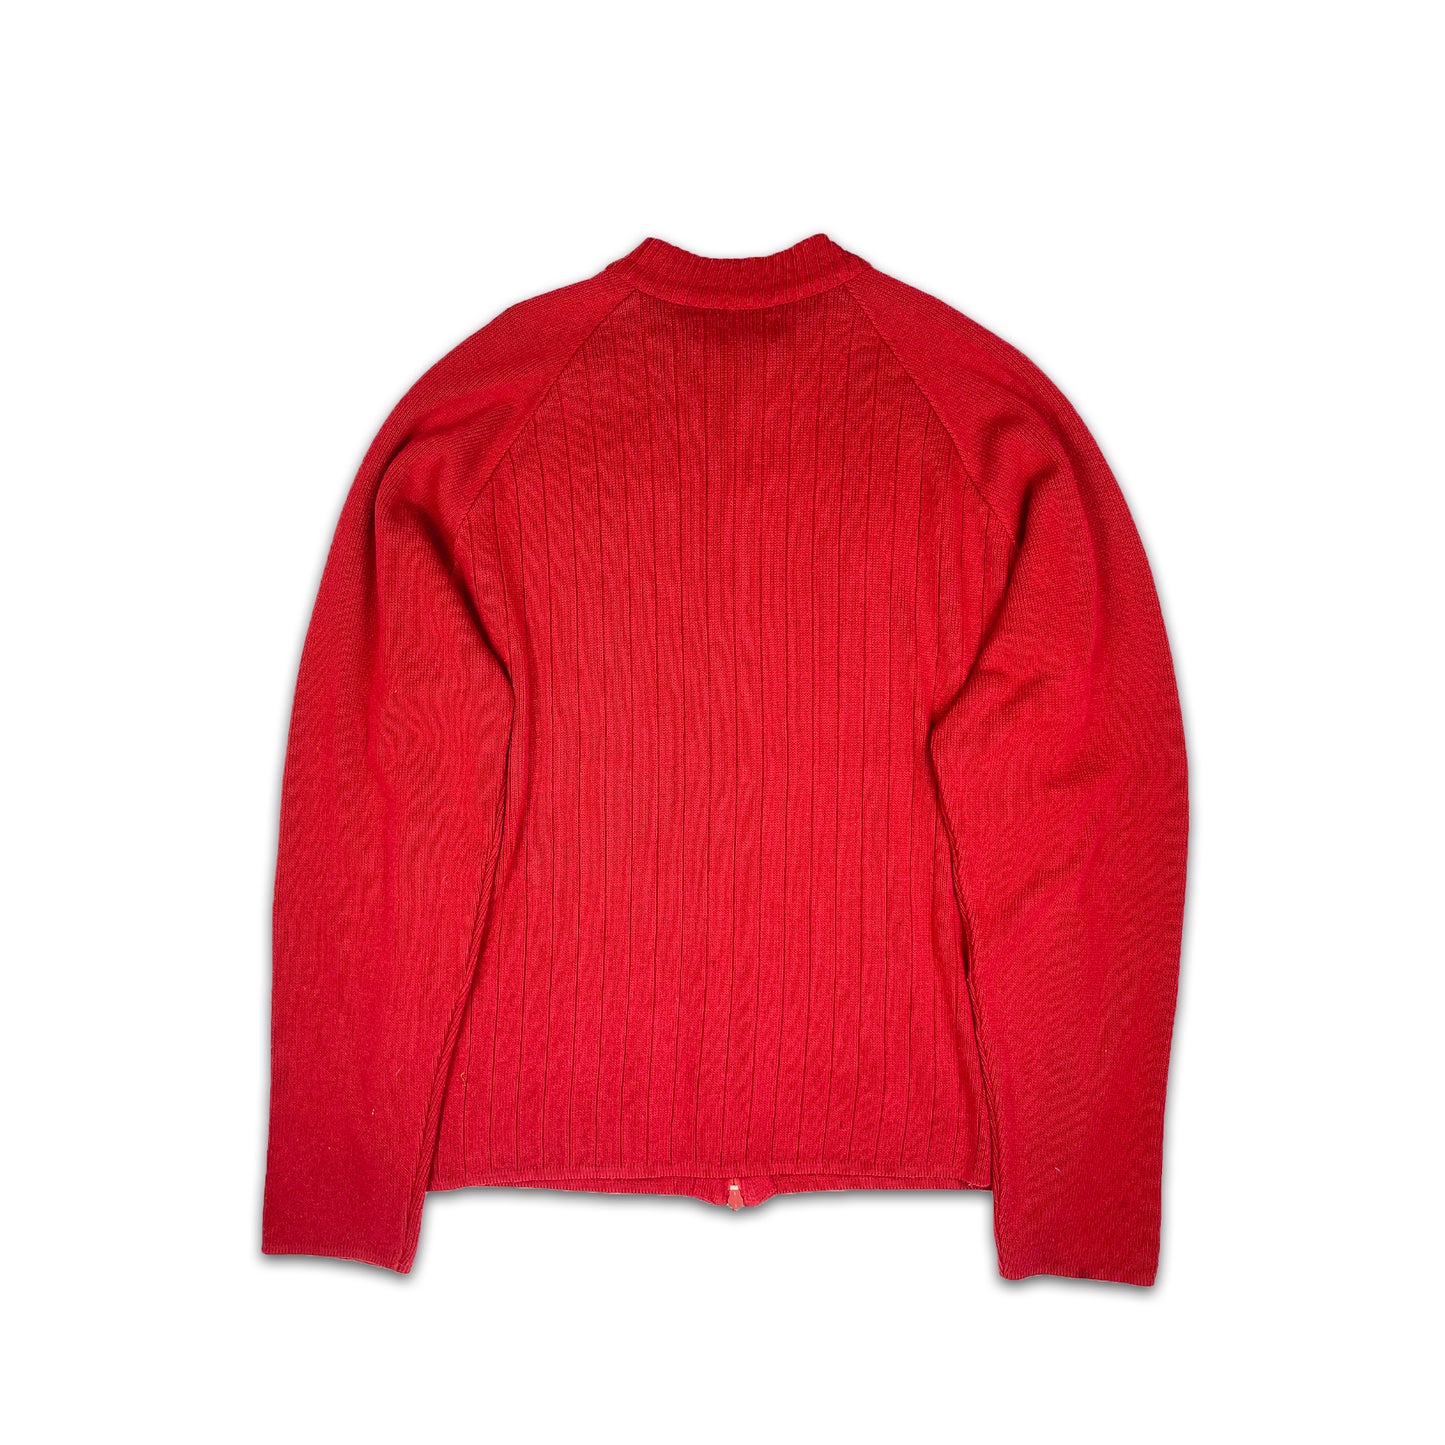 Custard Reclaimed Red Full-Zip Jacket | Size Medium